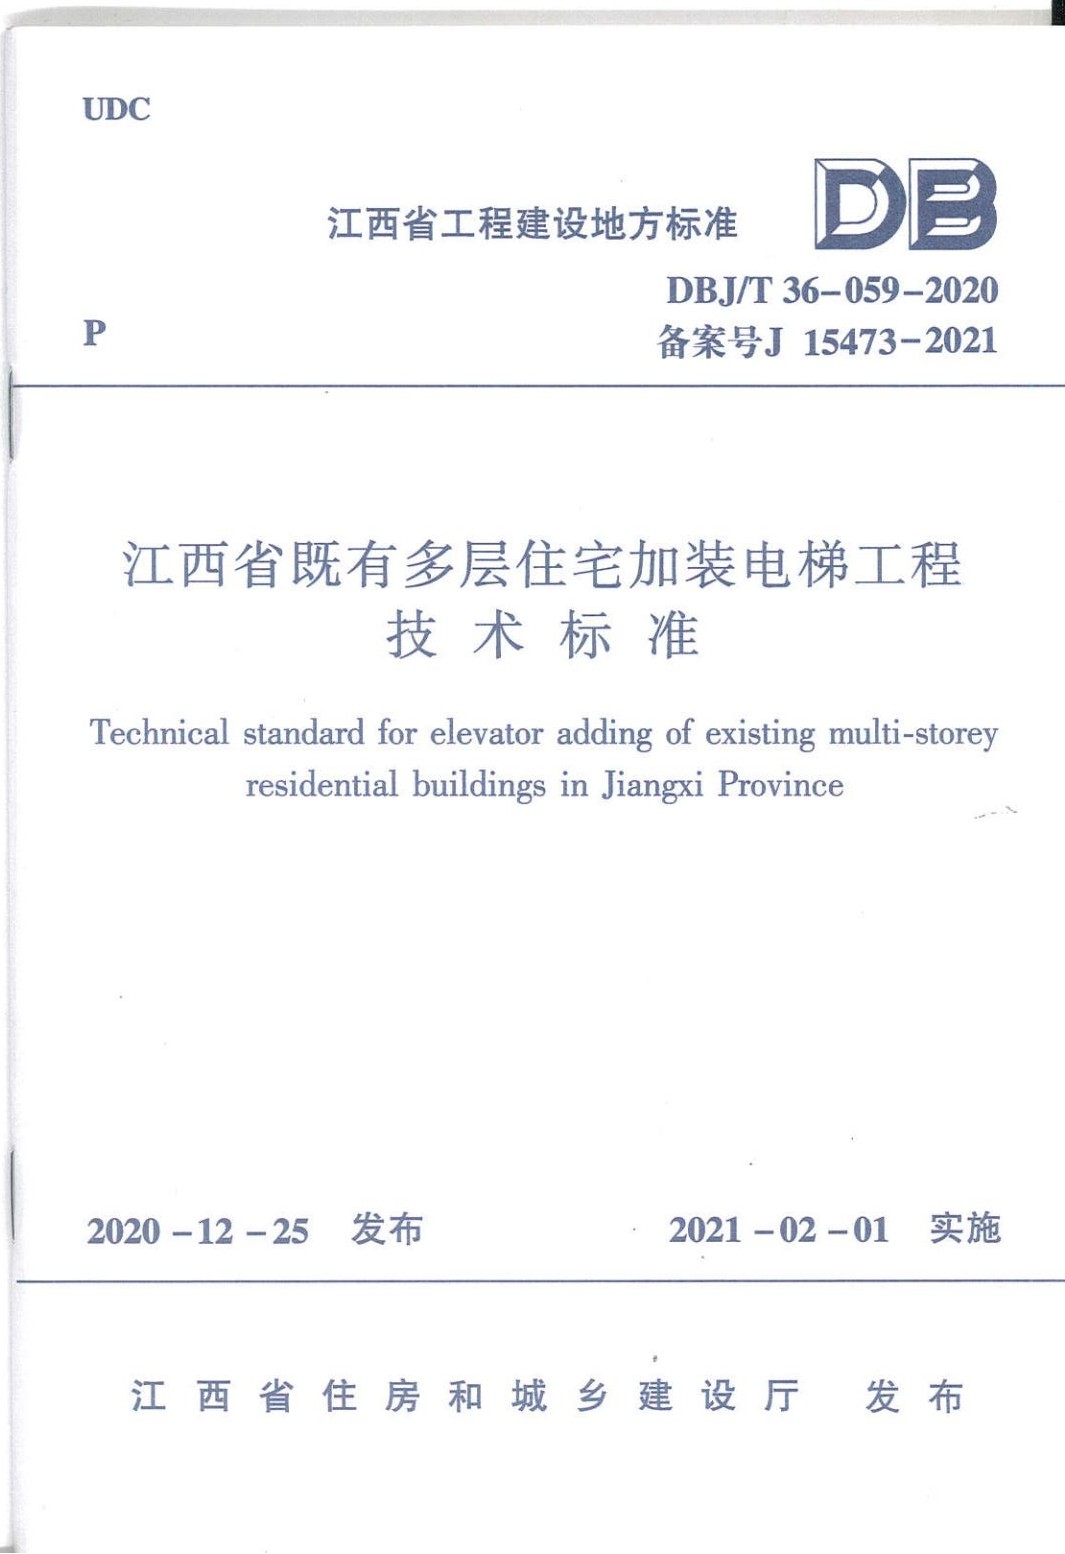 江西省既有多层住宅加装电梯工程技术标准封面页_00.jpg